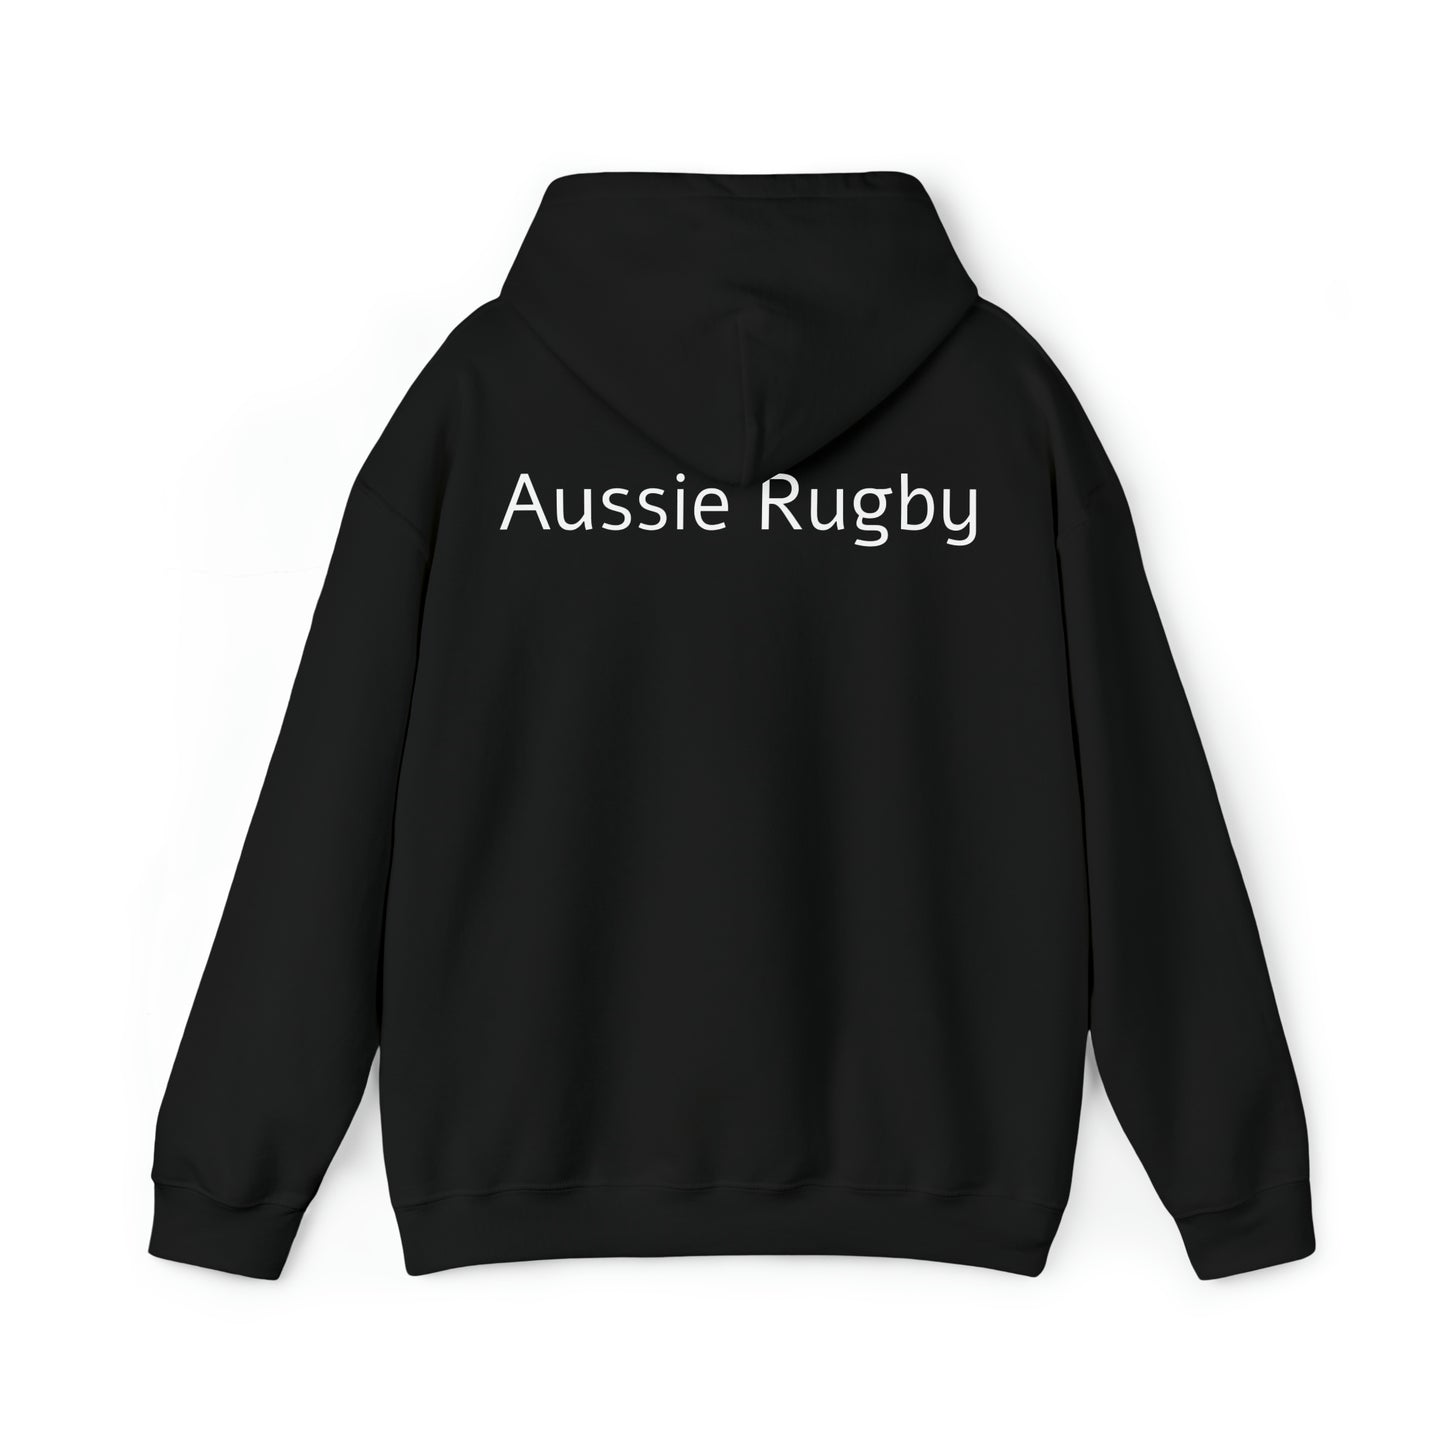 Australia lifting RWC - black hoodie